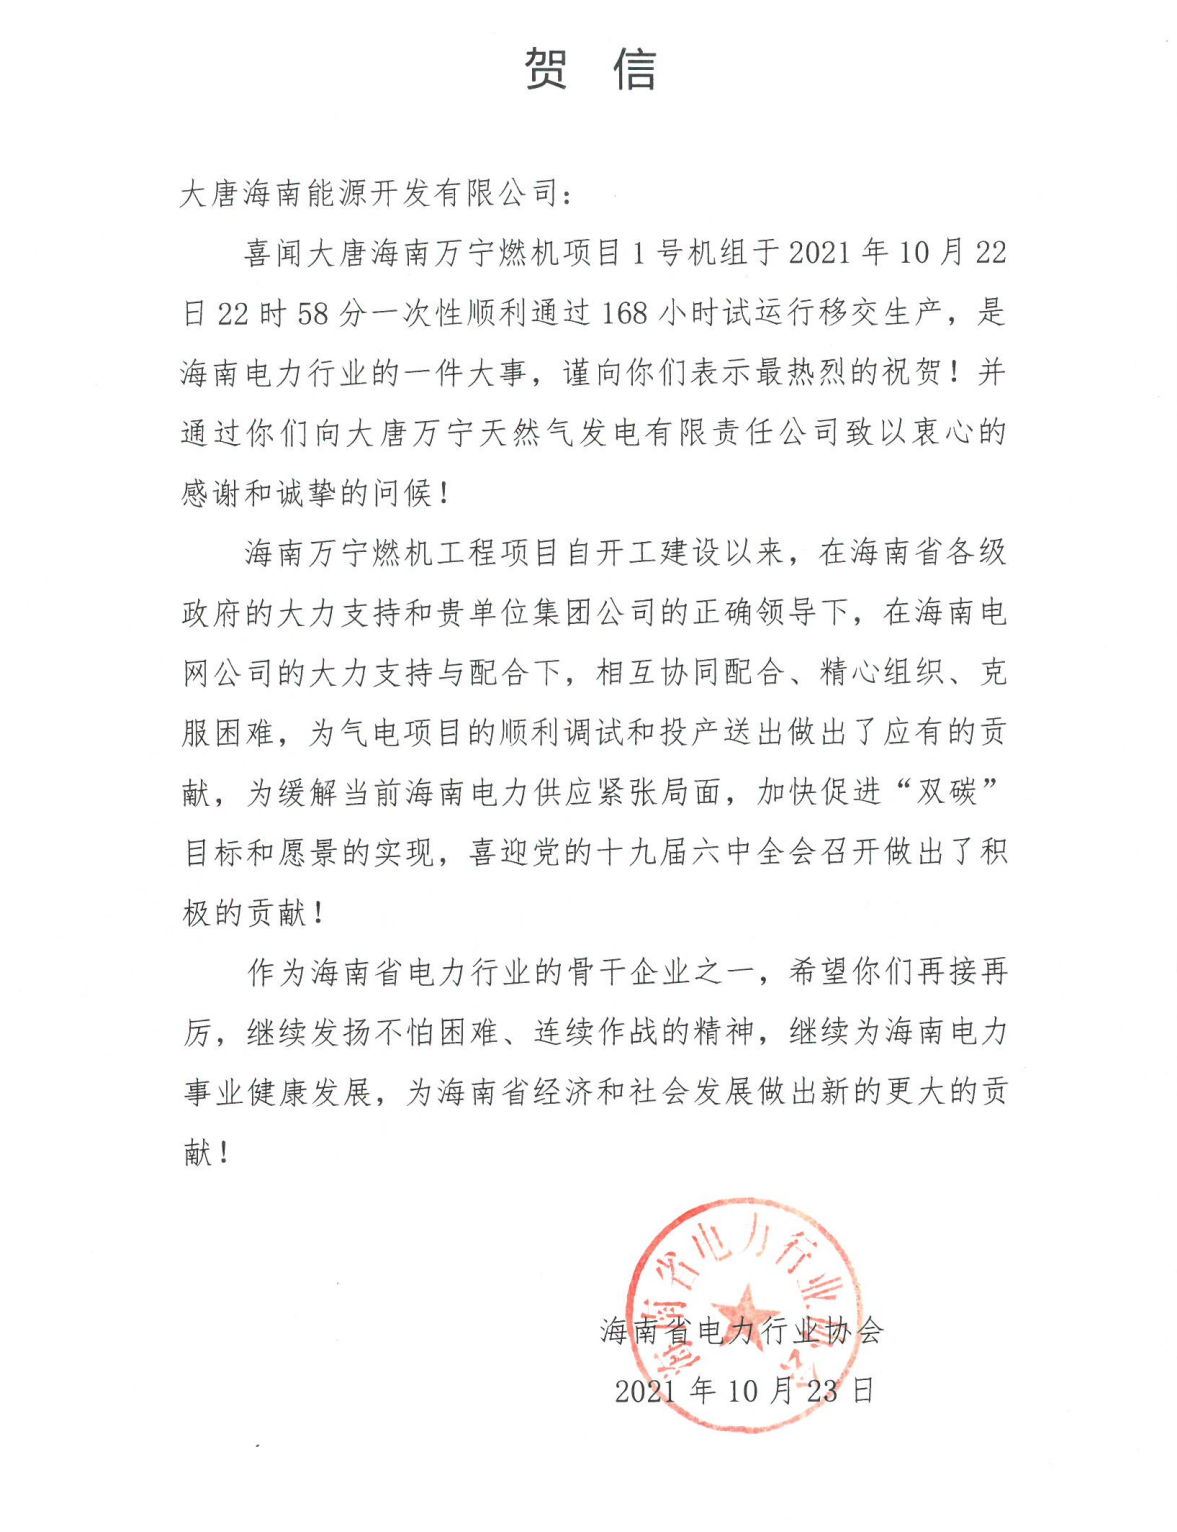 给大唐海南能源开发有限公司的一封信